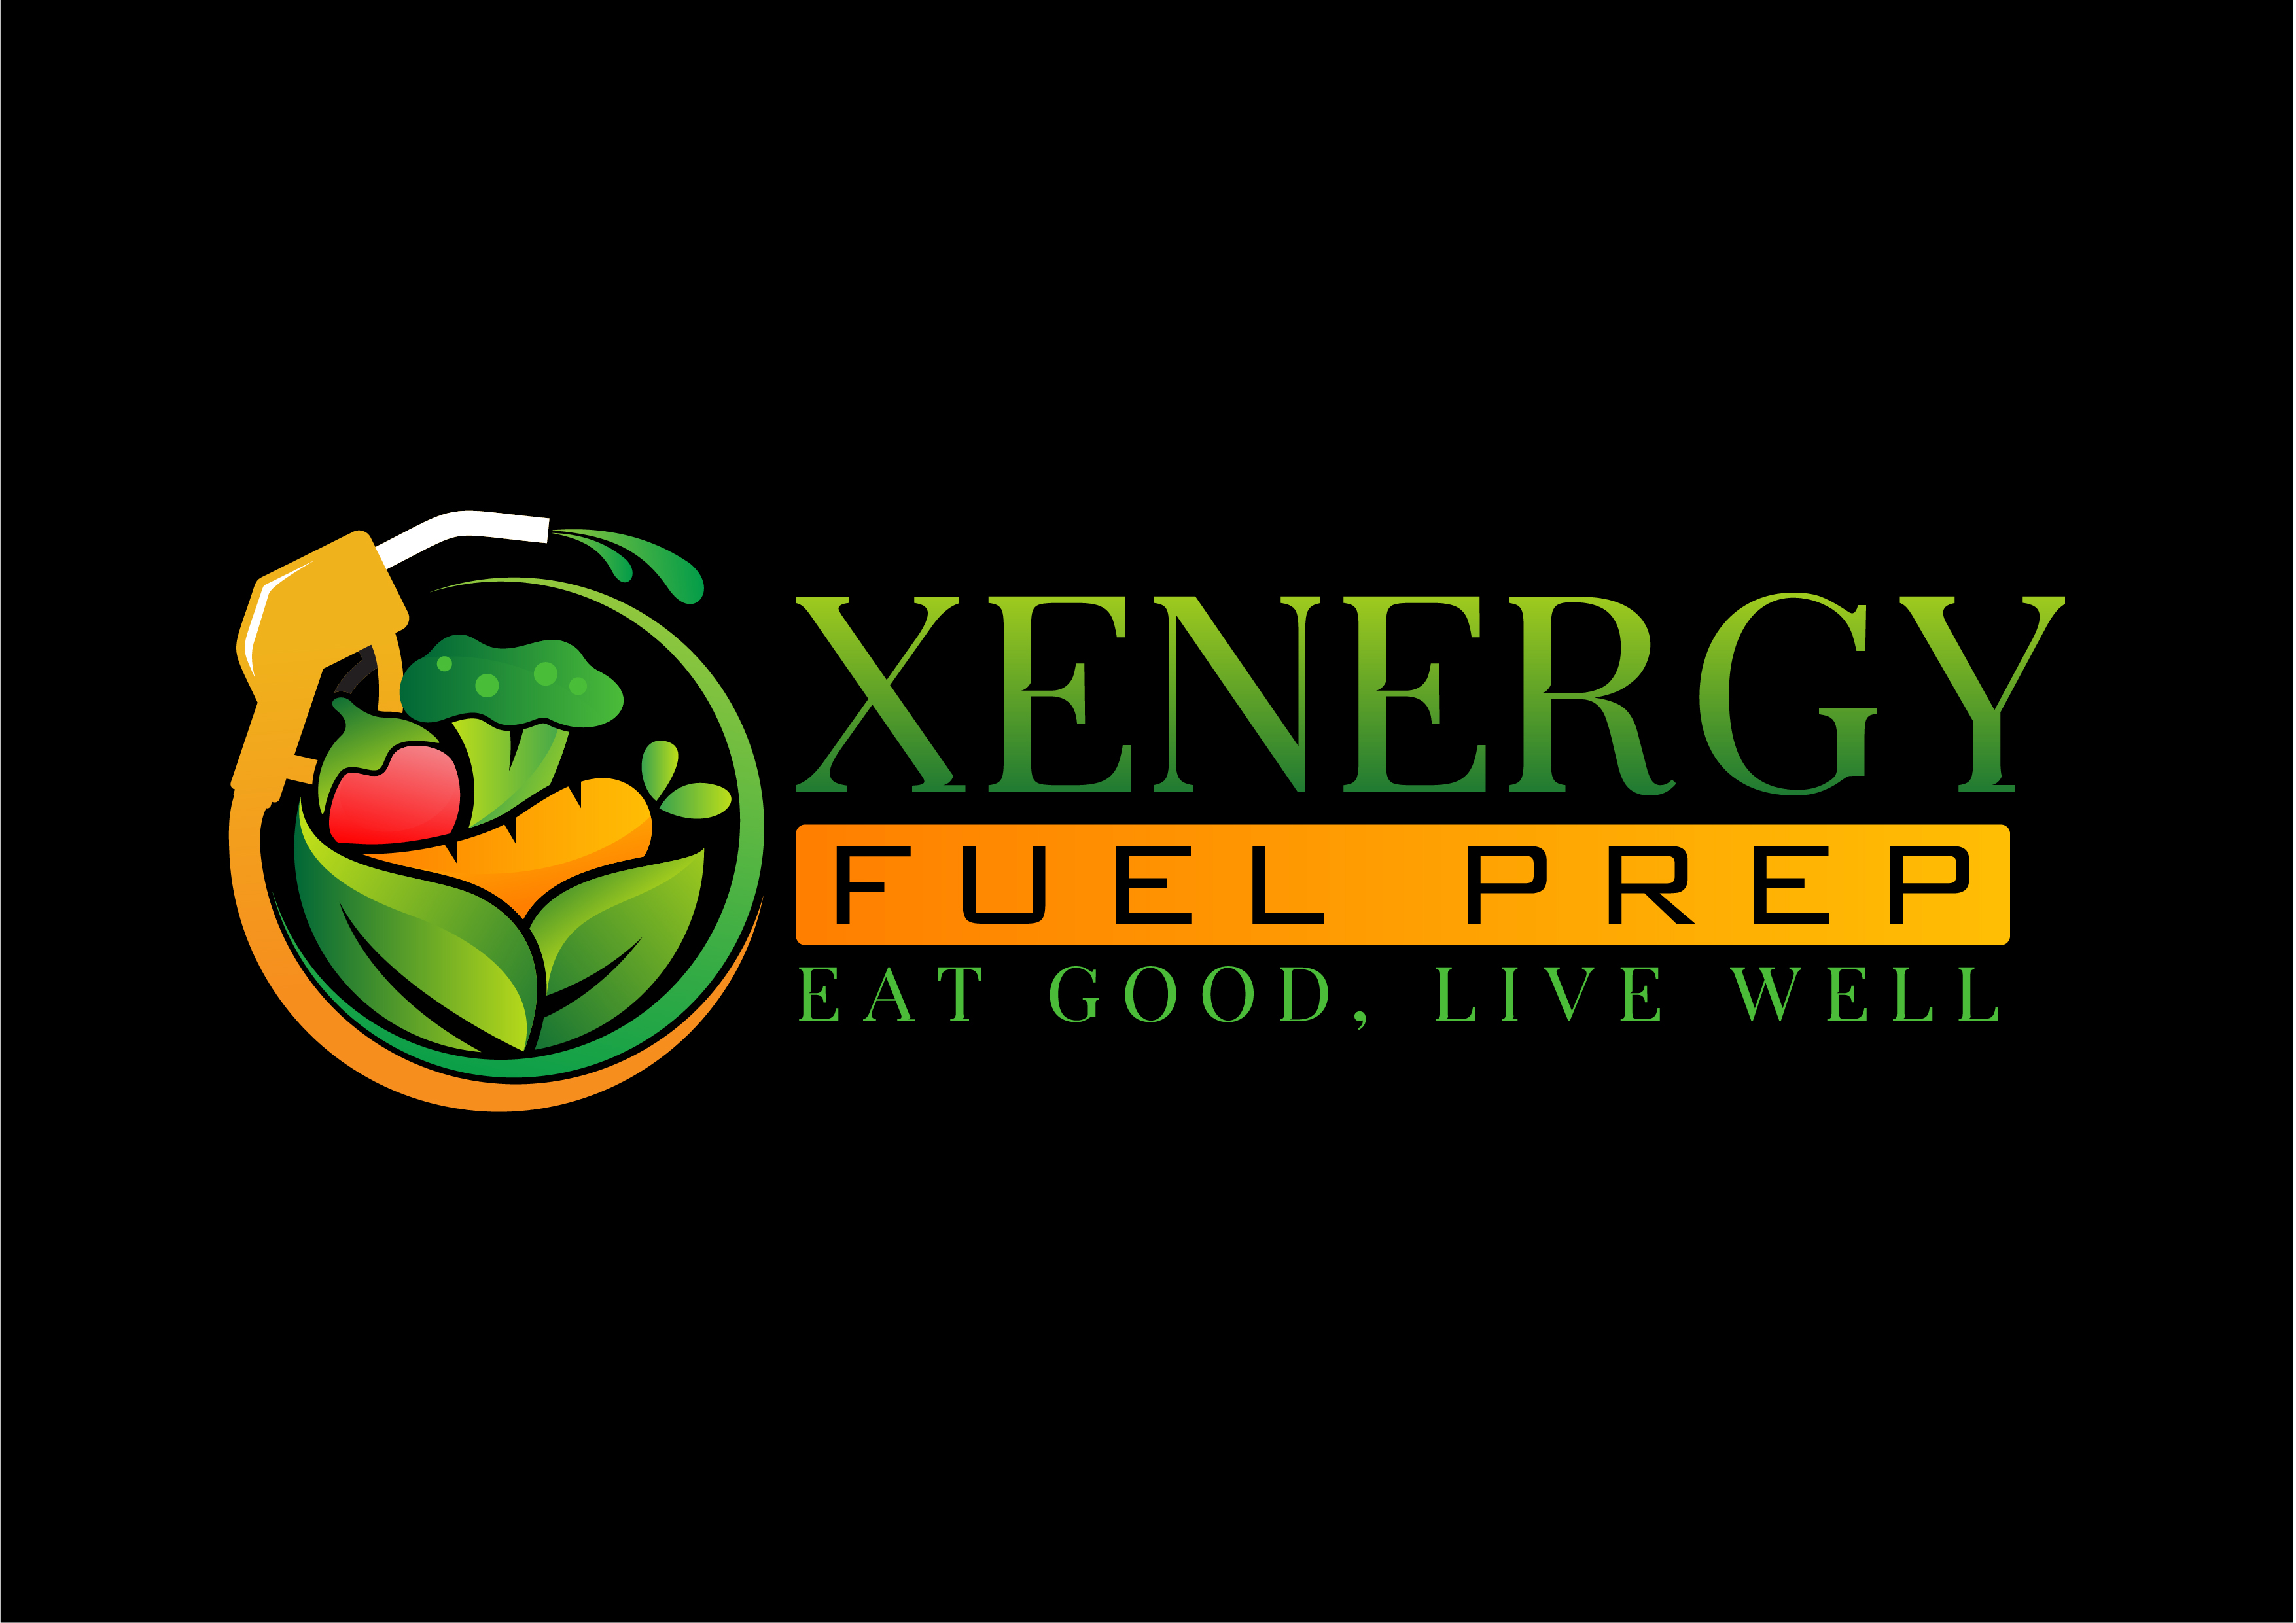 Xenergy Fuel Prep